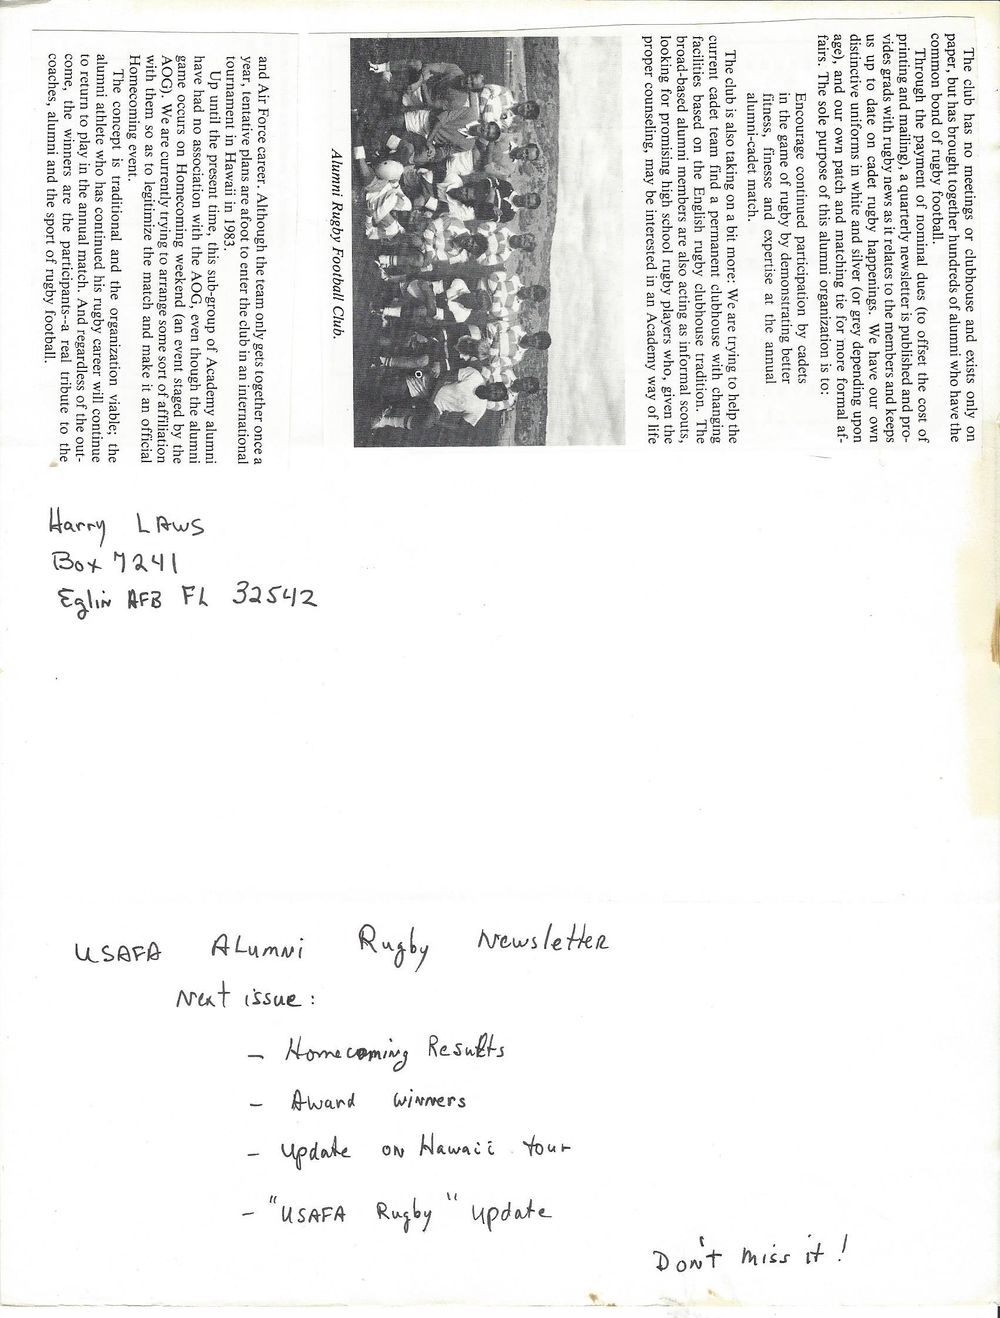 1982 09d newsletter.jpg